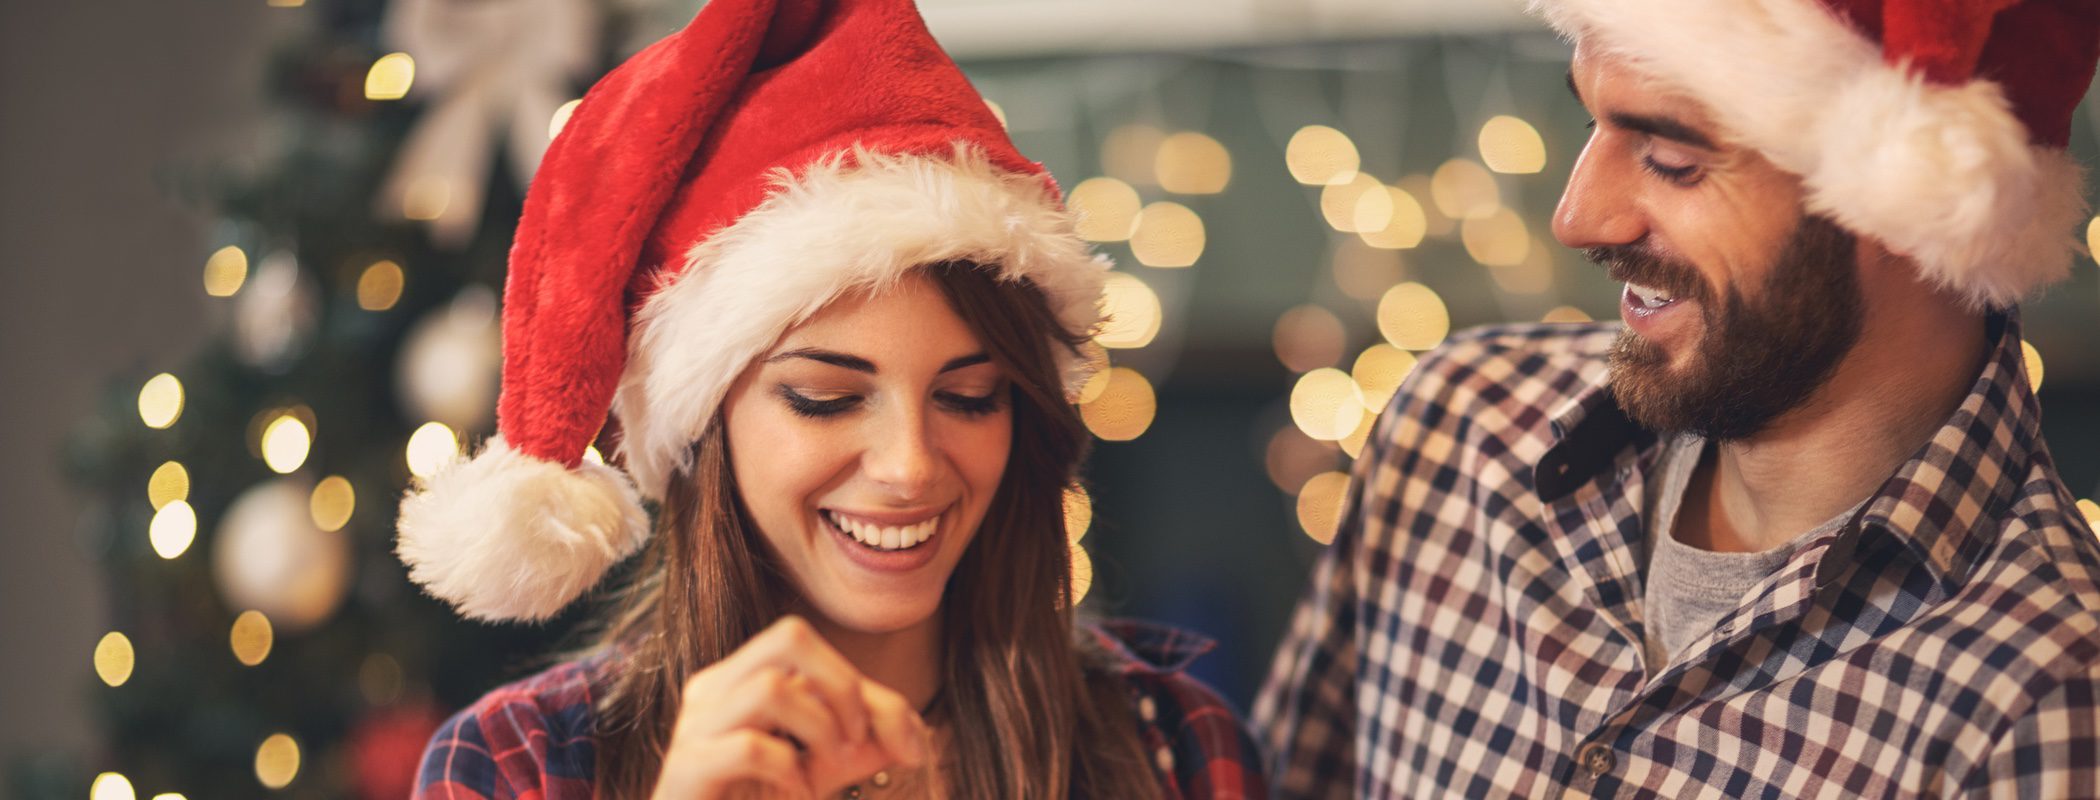 Detalles románticos para sorprender a tu pareja en Navidad